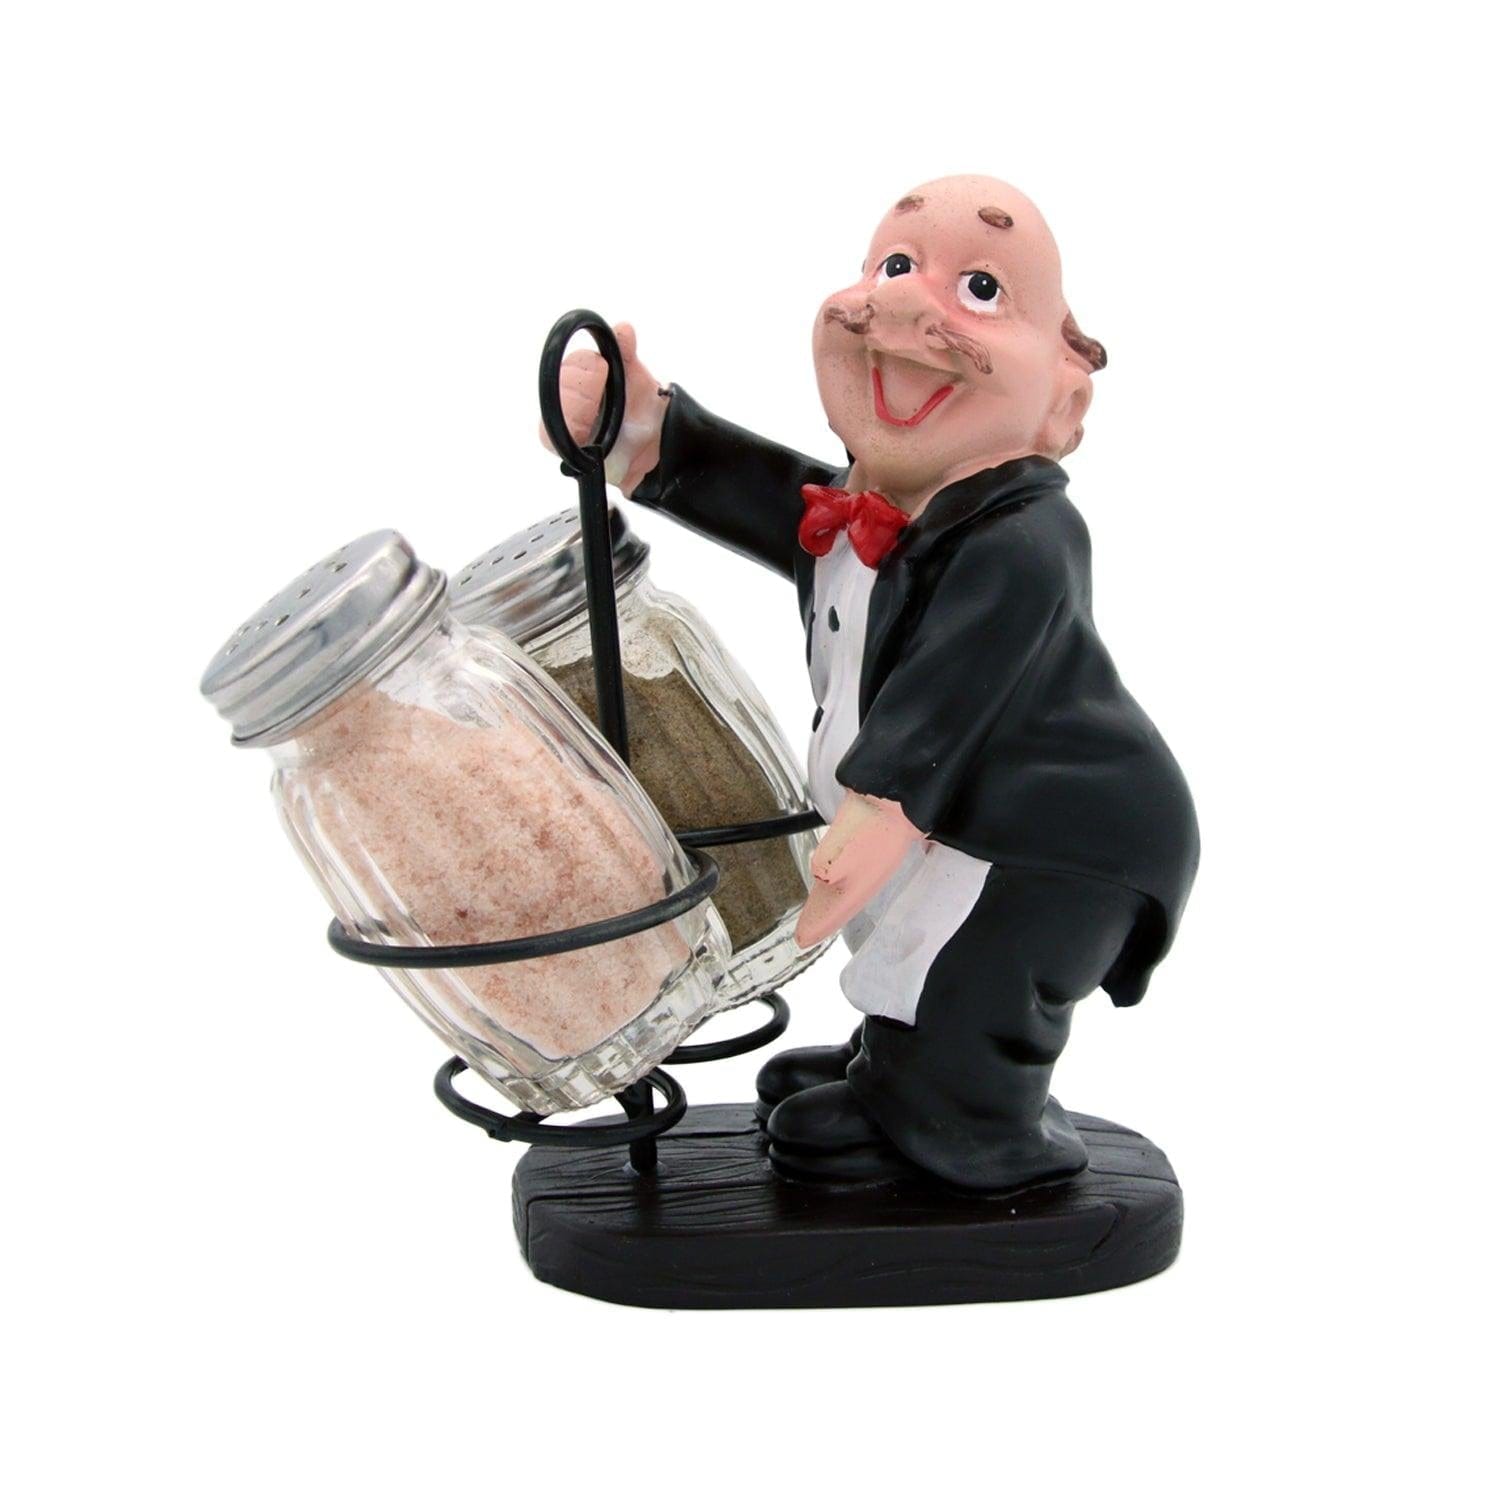 Whacky Waiter in Black Coat Figurine Resin Salt & Pepper Shakers Holder Set